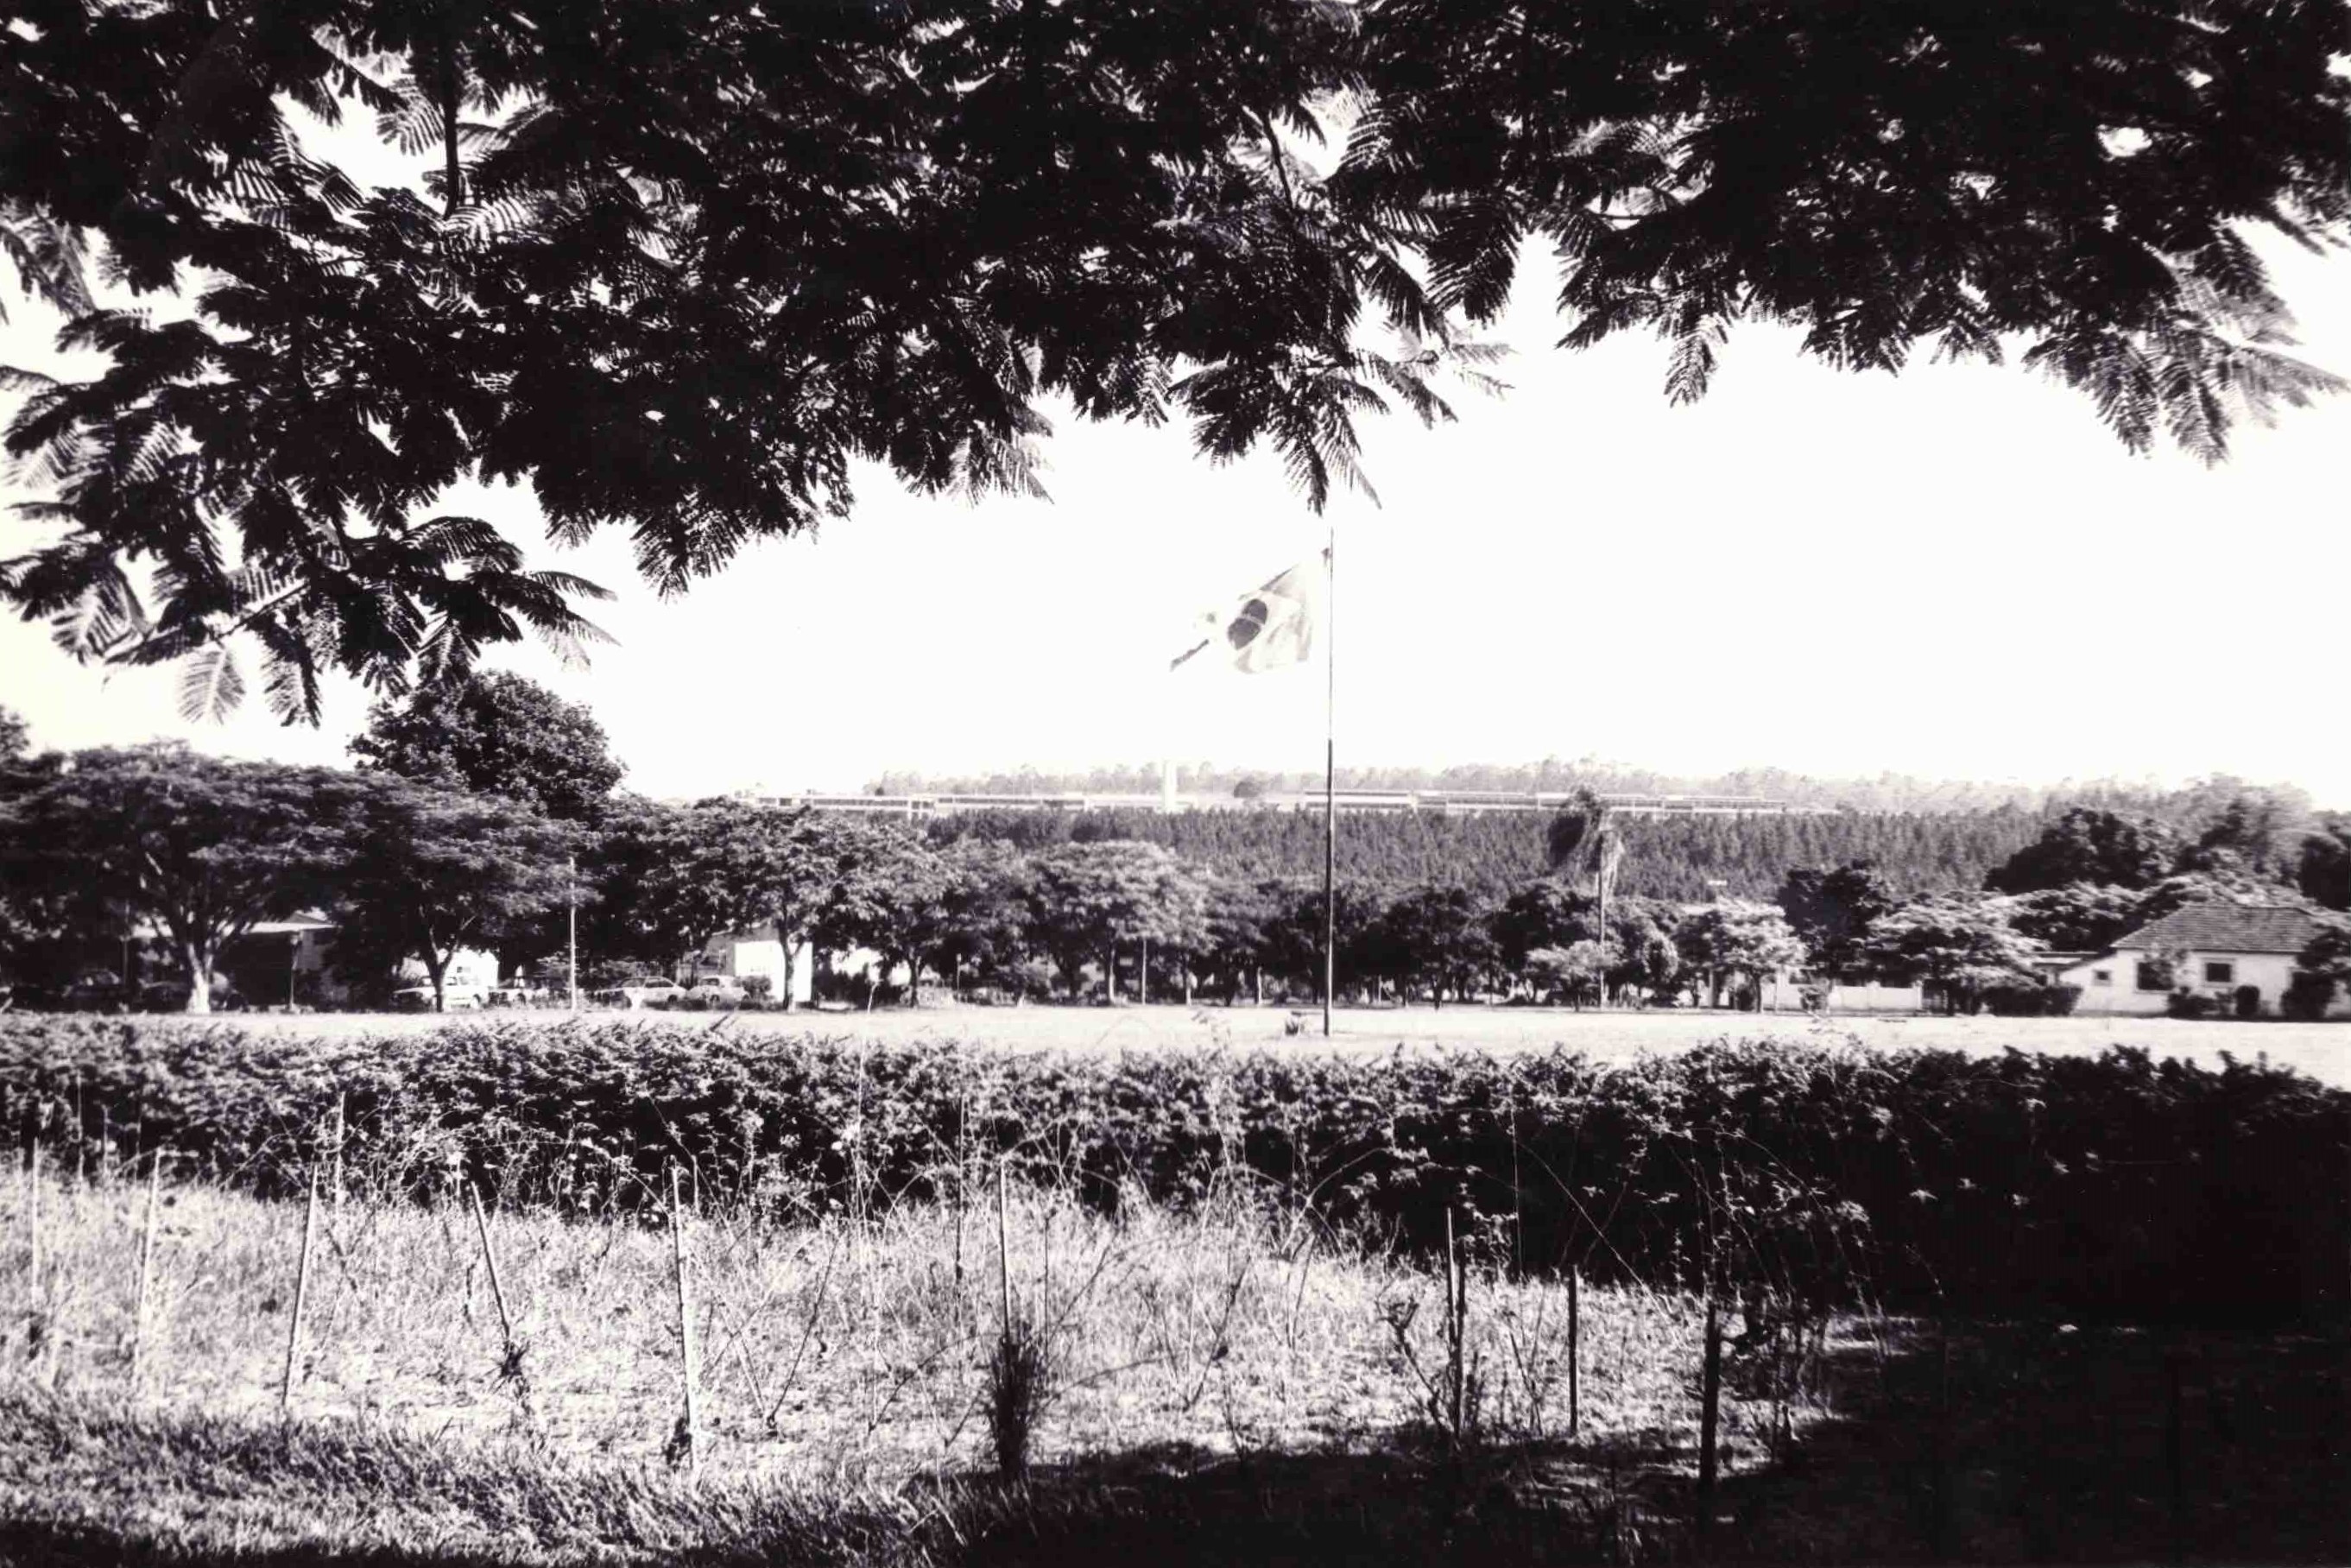 Vista do ponto de ônibus mostrando a área norte (acima dos pinheiros), gramado e banco do brasil